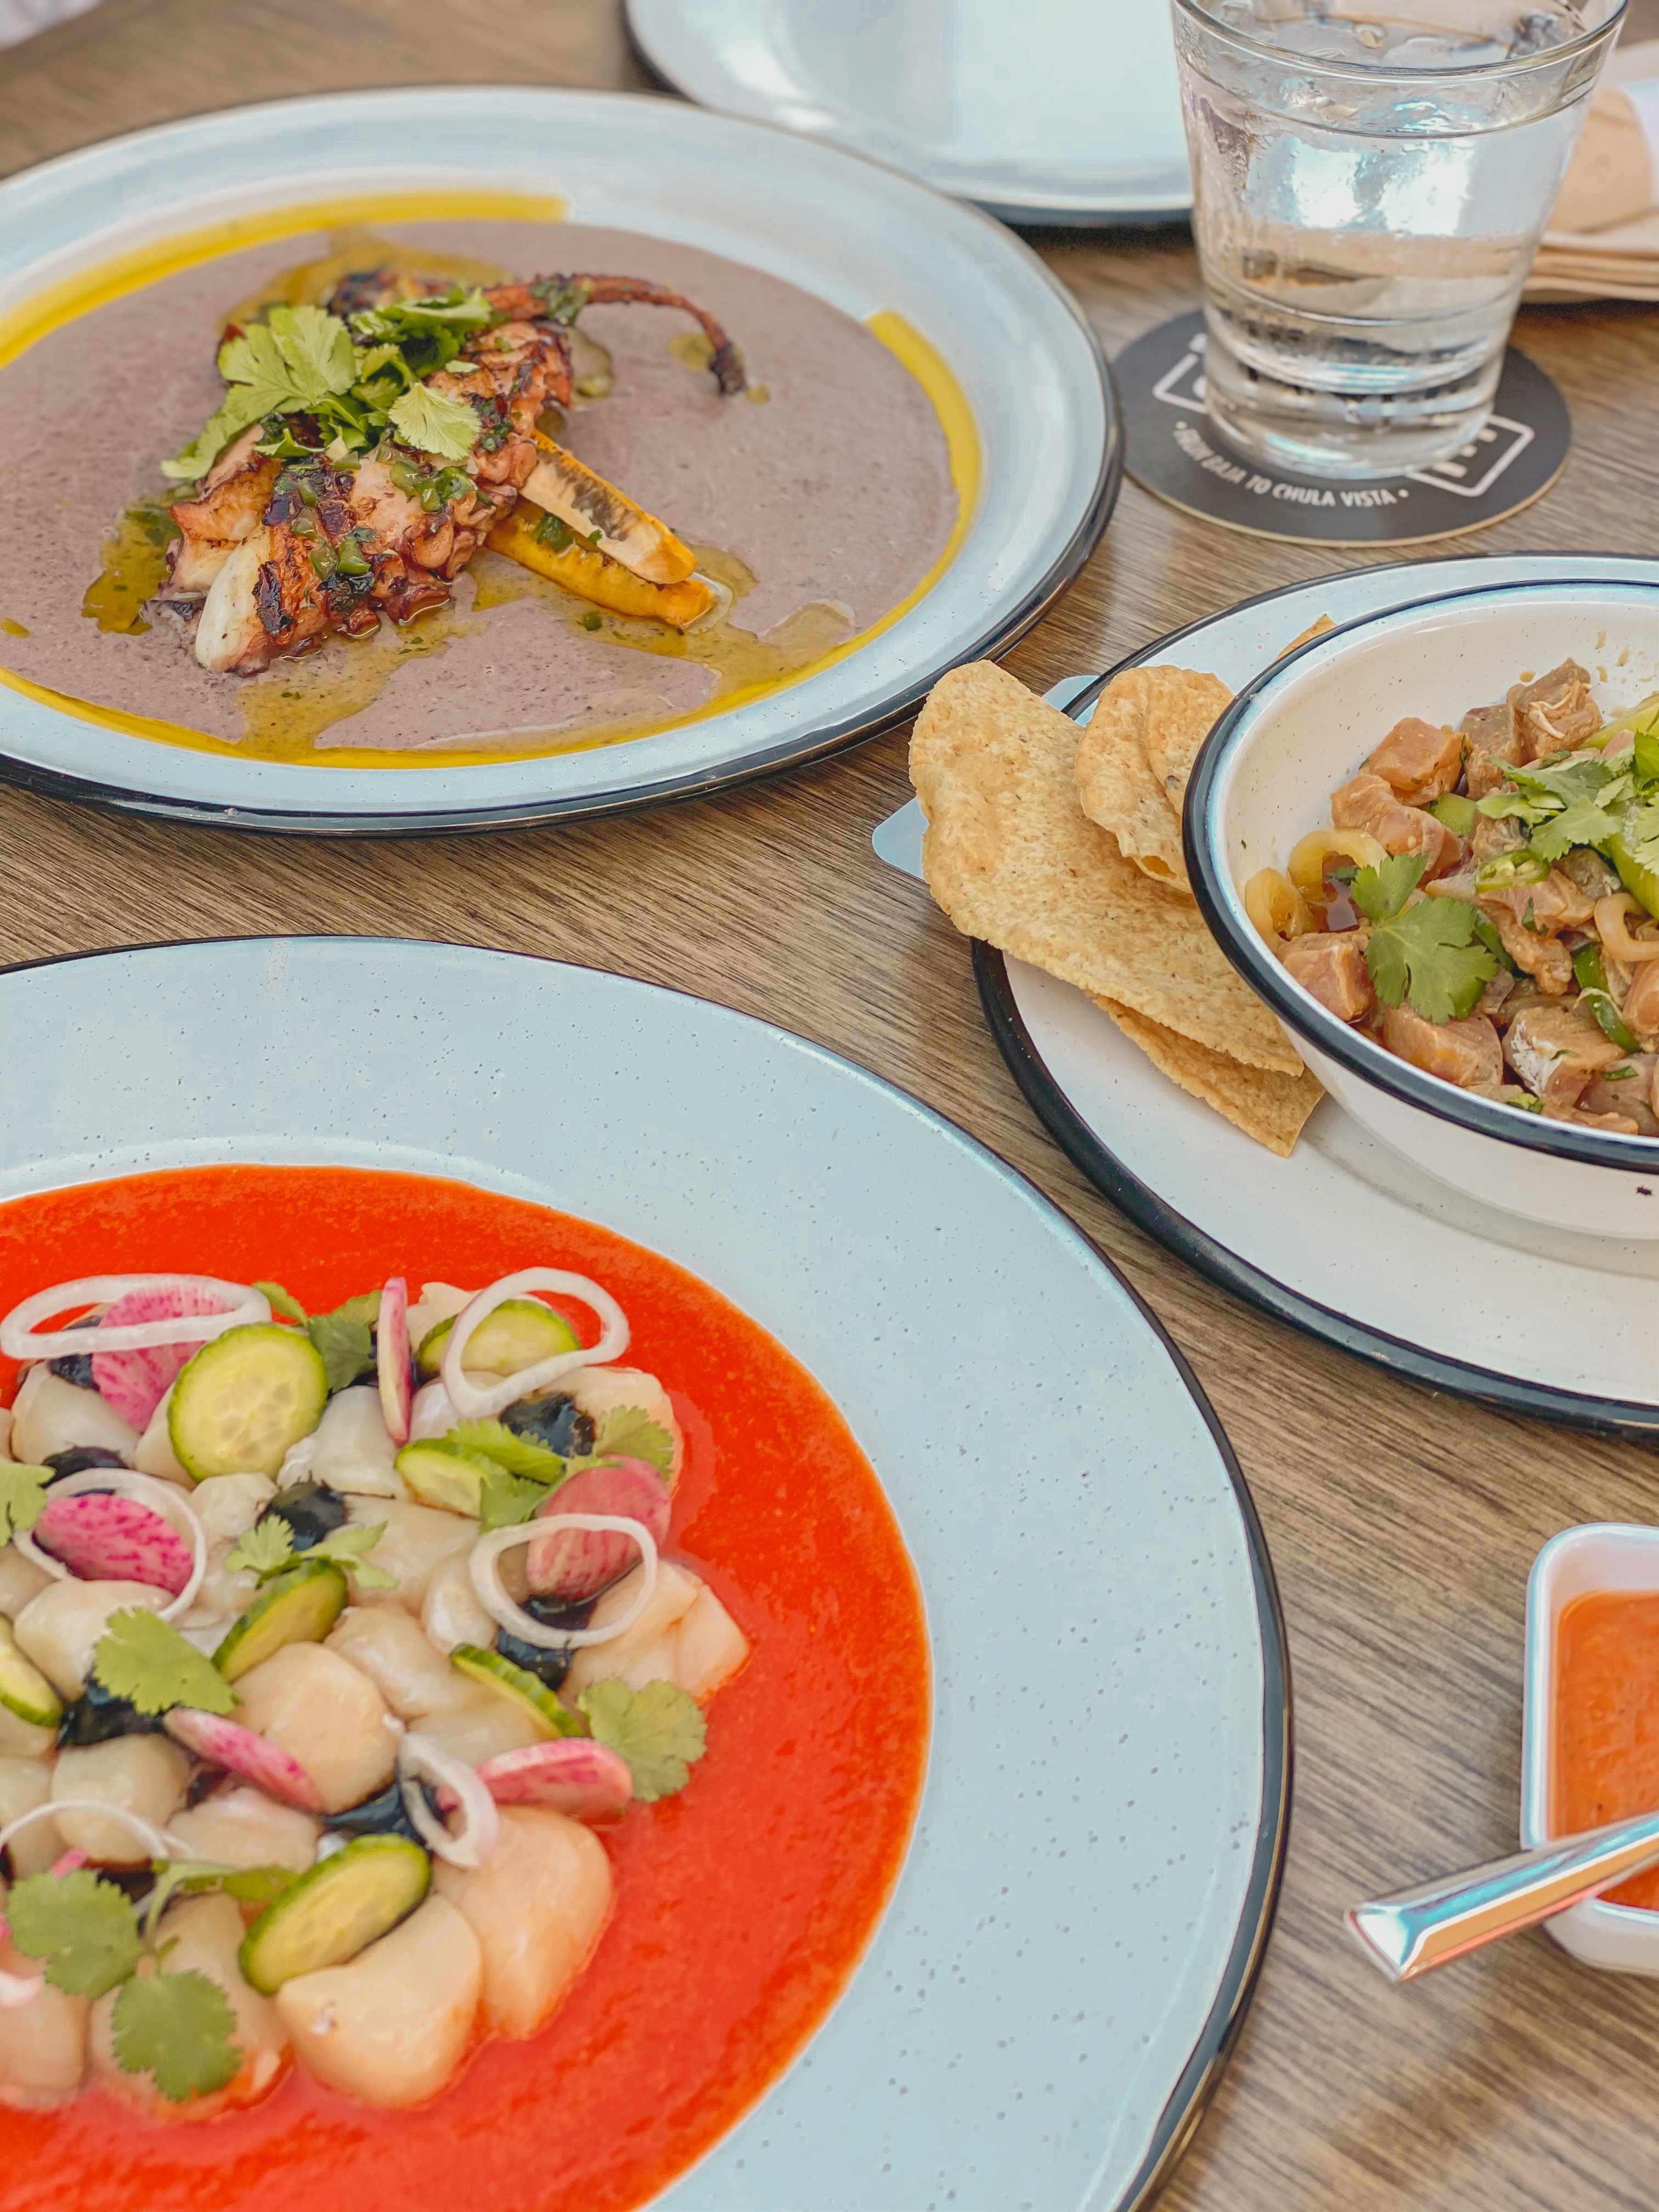 Best New Restaurant in San Diego: El Cruce + 241, authentic Baja cuisine